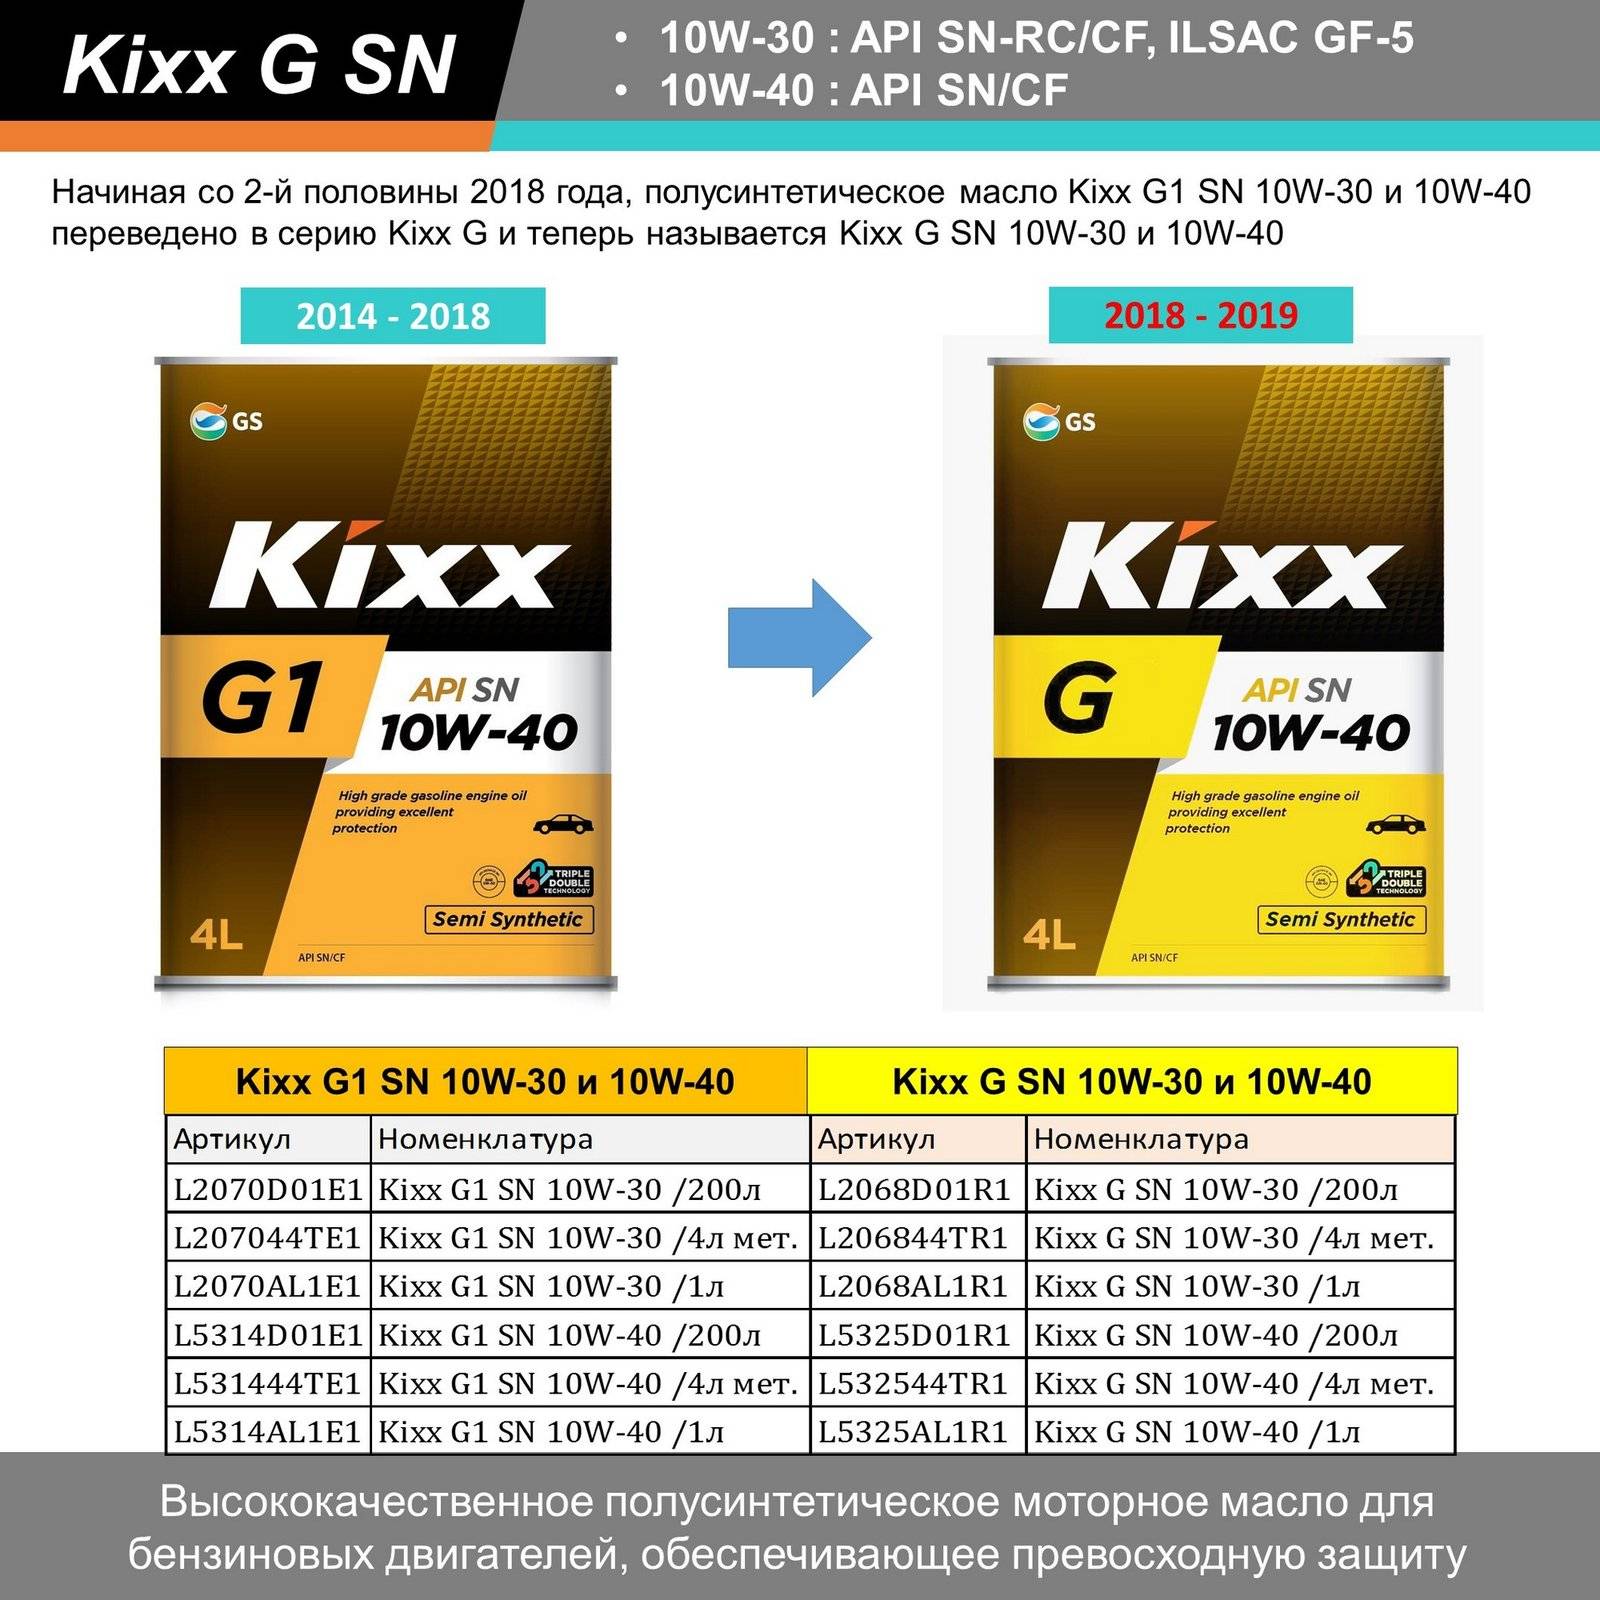 Масло kixx g1 5w-30: характеристики, применения и форма выпуска